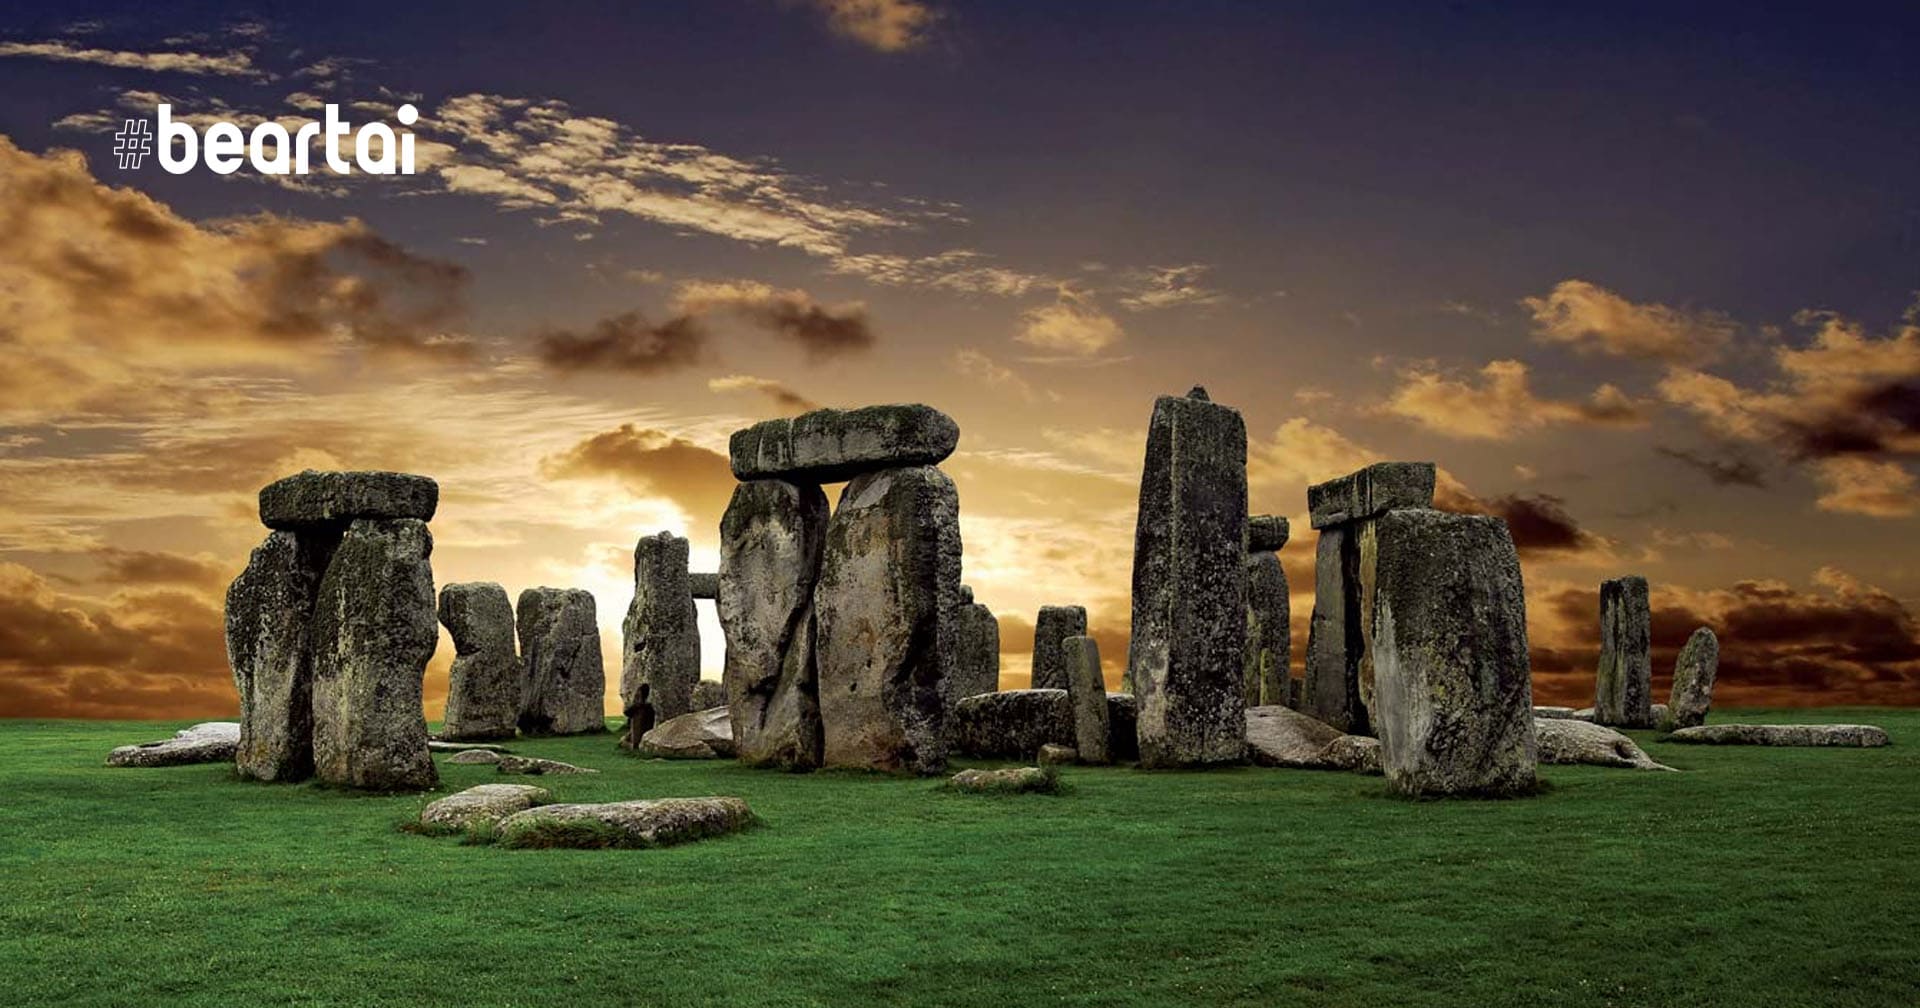 โลกค้นพบแล้ว! ปริศนา “ที่มา” ของแท่งหินที่ใช้สร้าง Stonehenge ของอังกฤษ